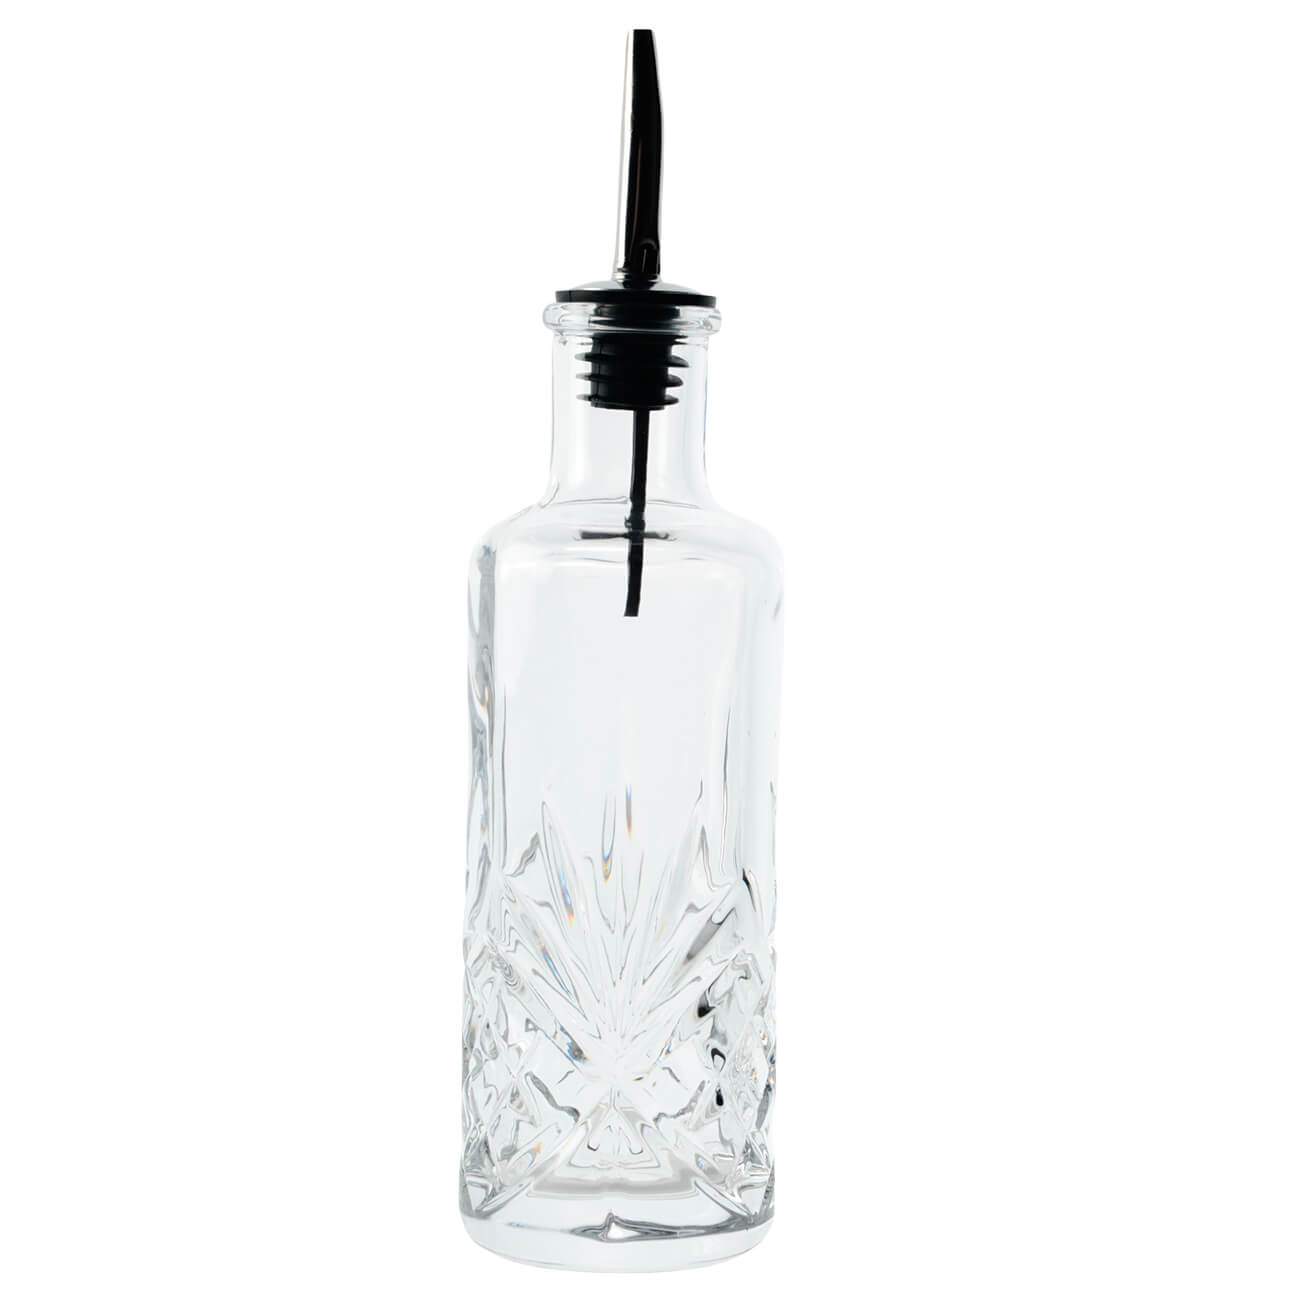 Oil or vinegar bottle, 250 ml, with dispenser, glass R / steel, Sabal изображение № 1